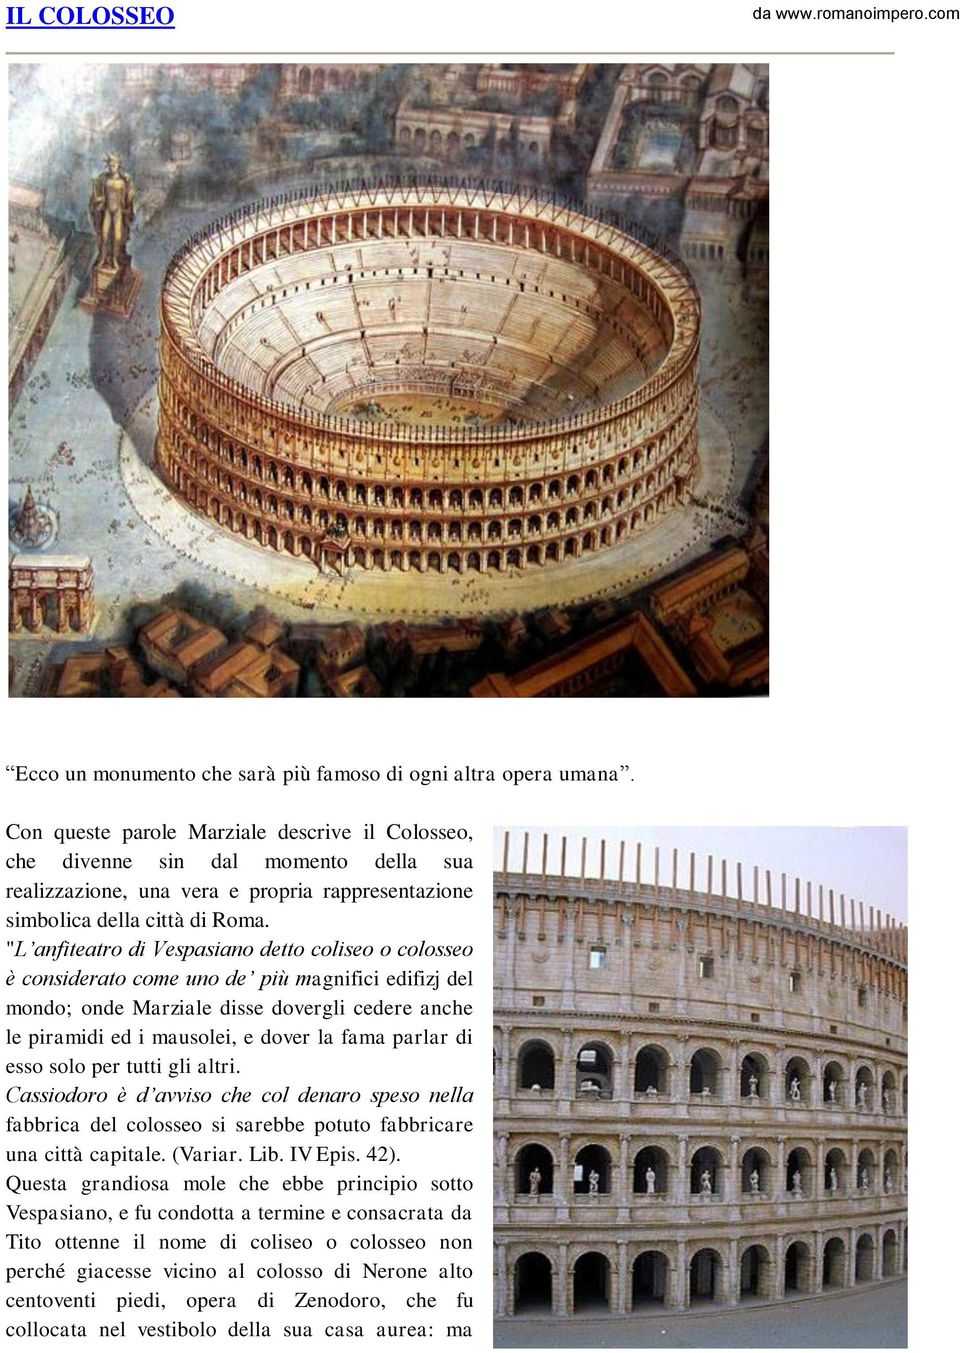 "L anfiteatro di Vespasiano detto coliseo o colosseo è considerato come uno de più magnifici edifizj del mondo; onde Marziale disse dovergli cedere anche le piramidi ed i mausolei, e dover la fama